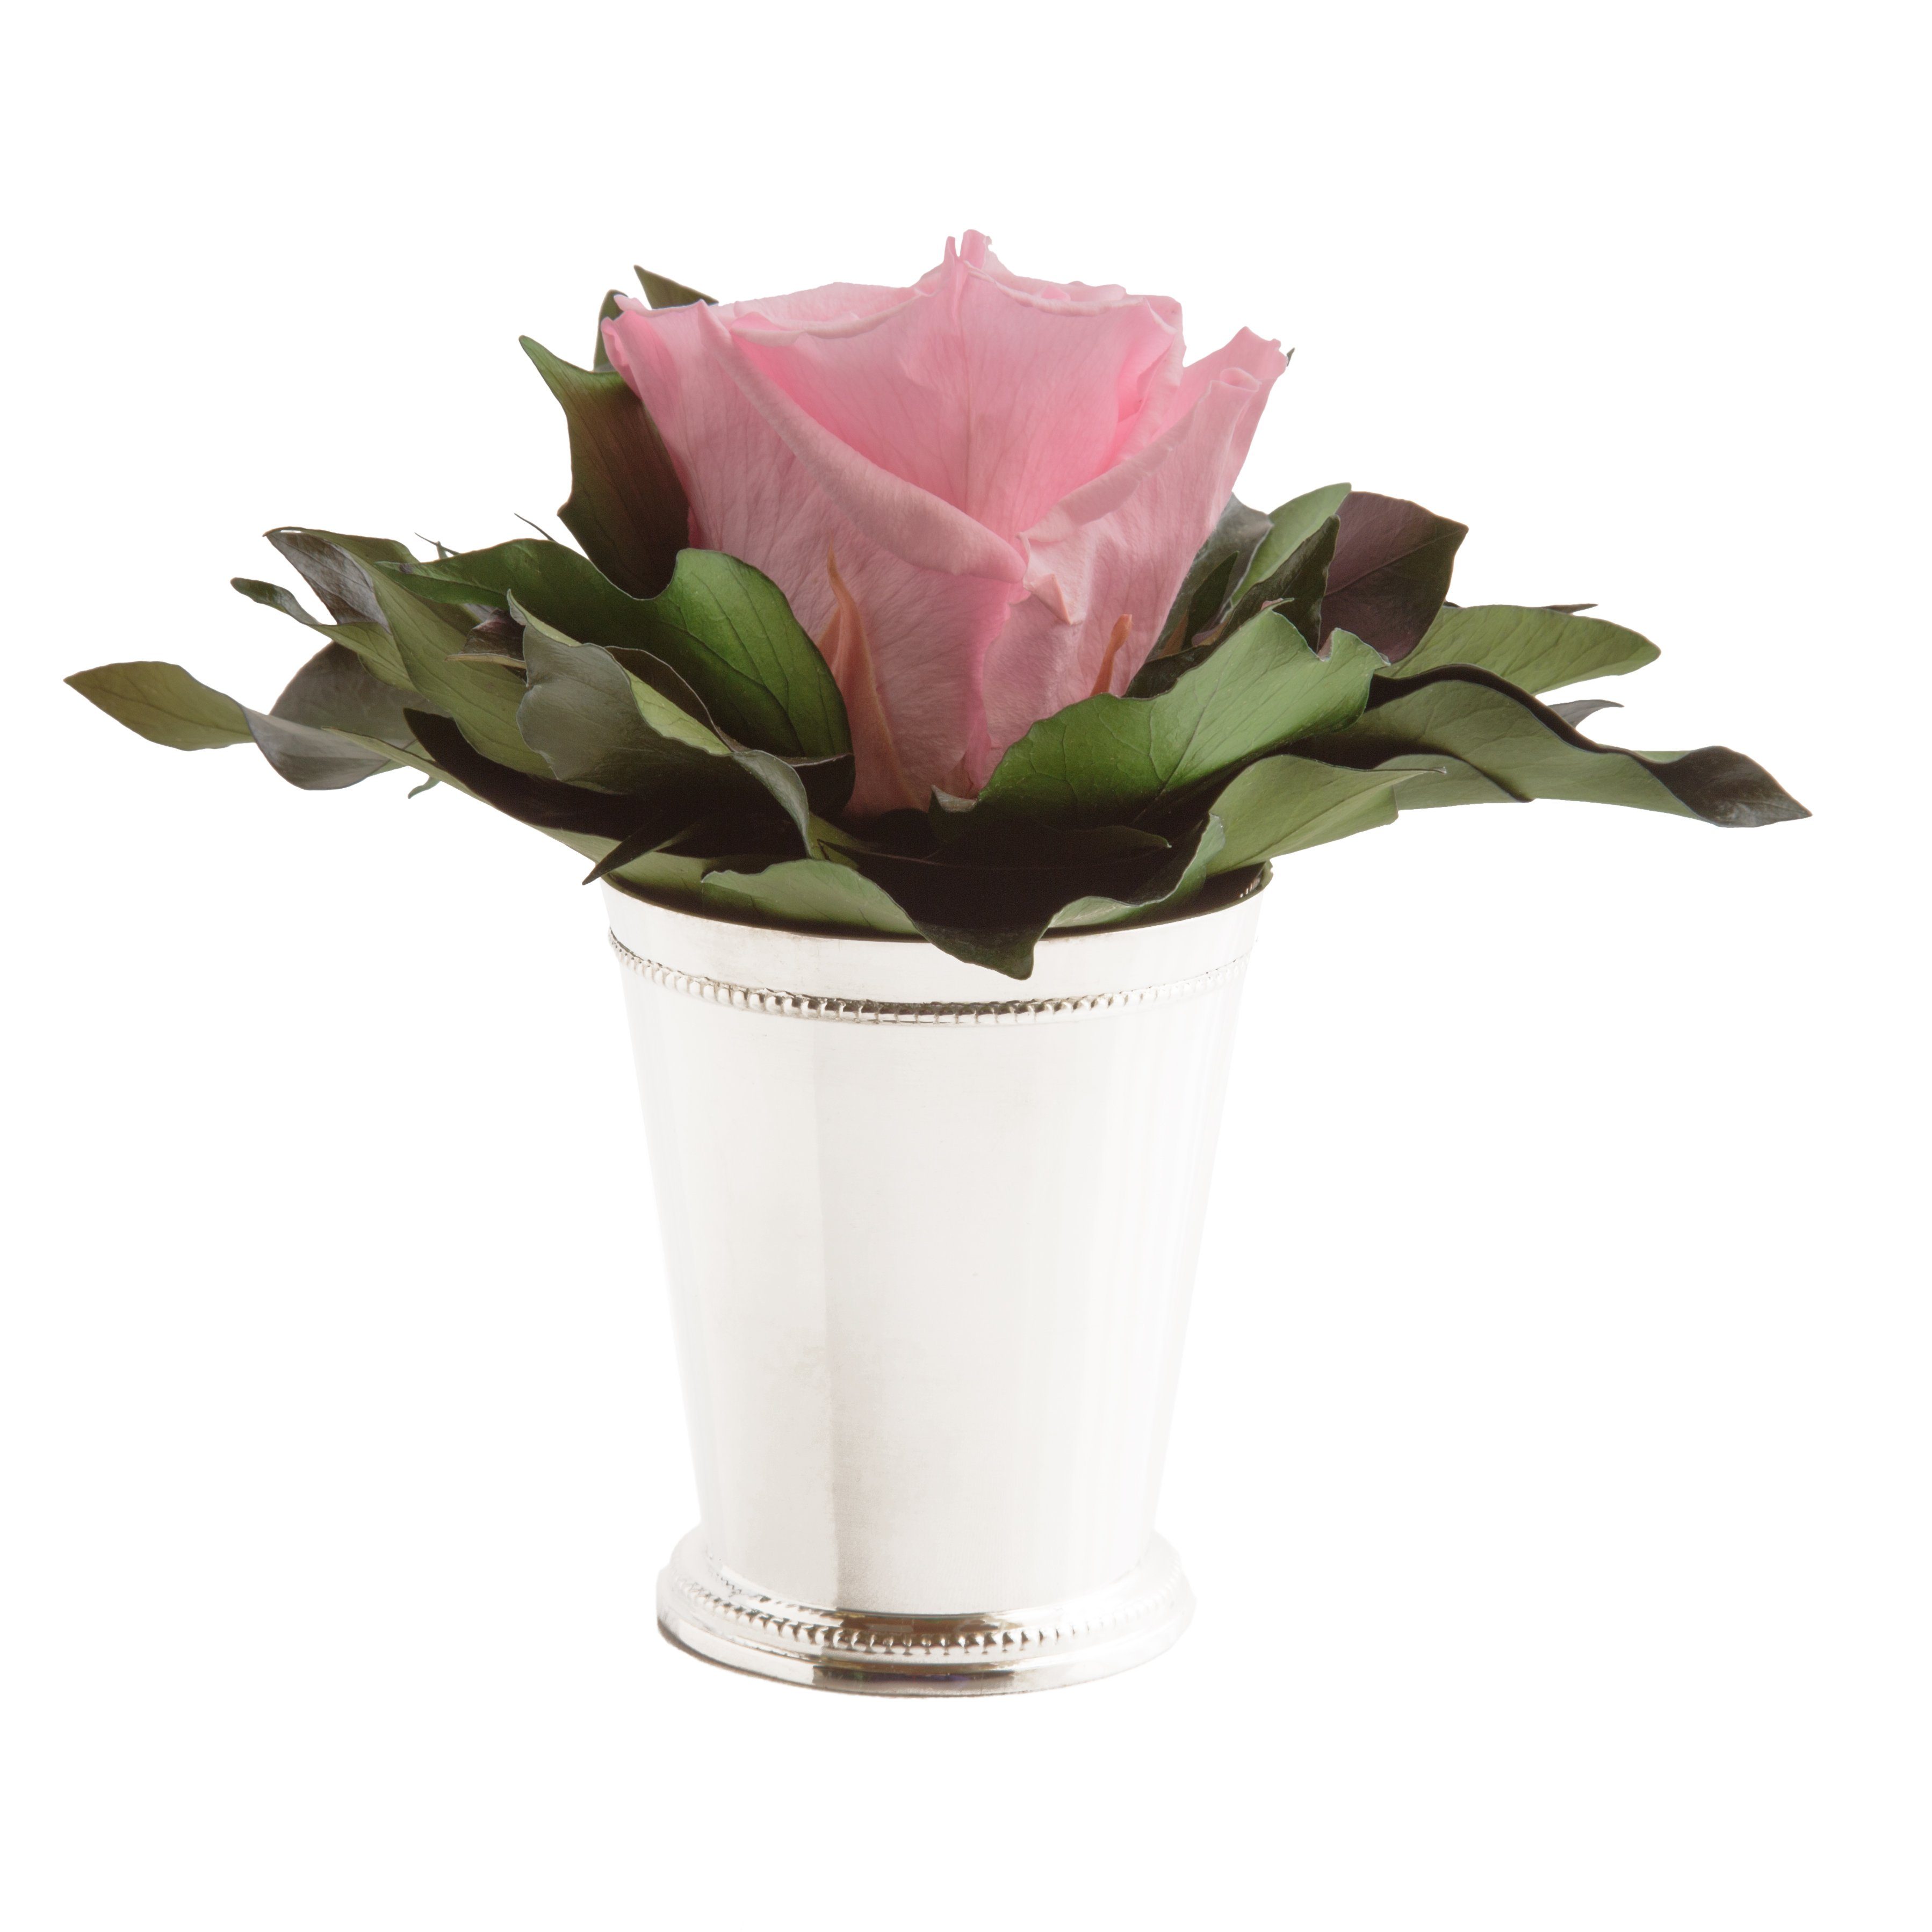 Künstliche Zimmerpflanze 1 Infinity Blume Becher silberfarben Geschenkidee für Frauen Rose, ROSEMARIE SCHULZ Heidelberg, Höhe 12 cm, Echte Rose lange haltbar Rosa